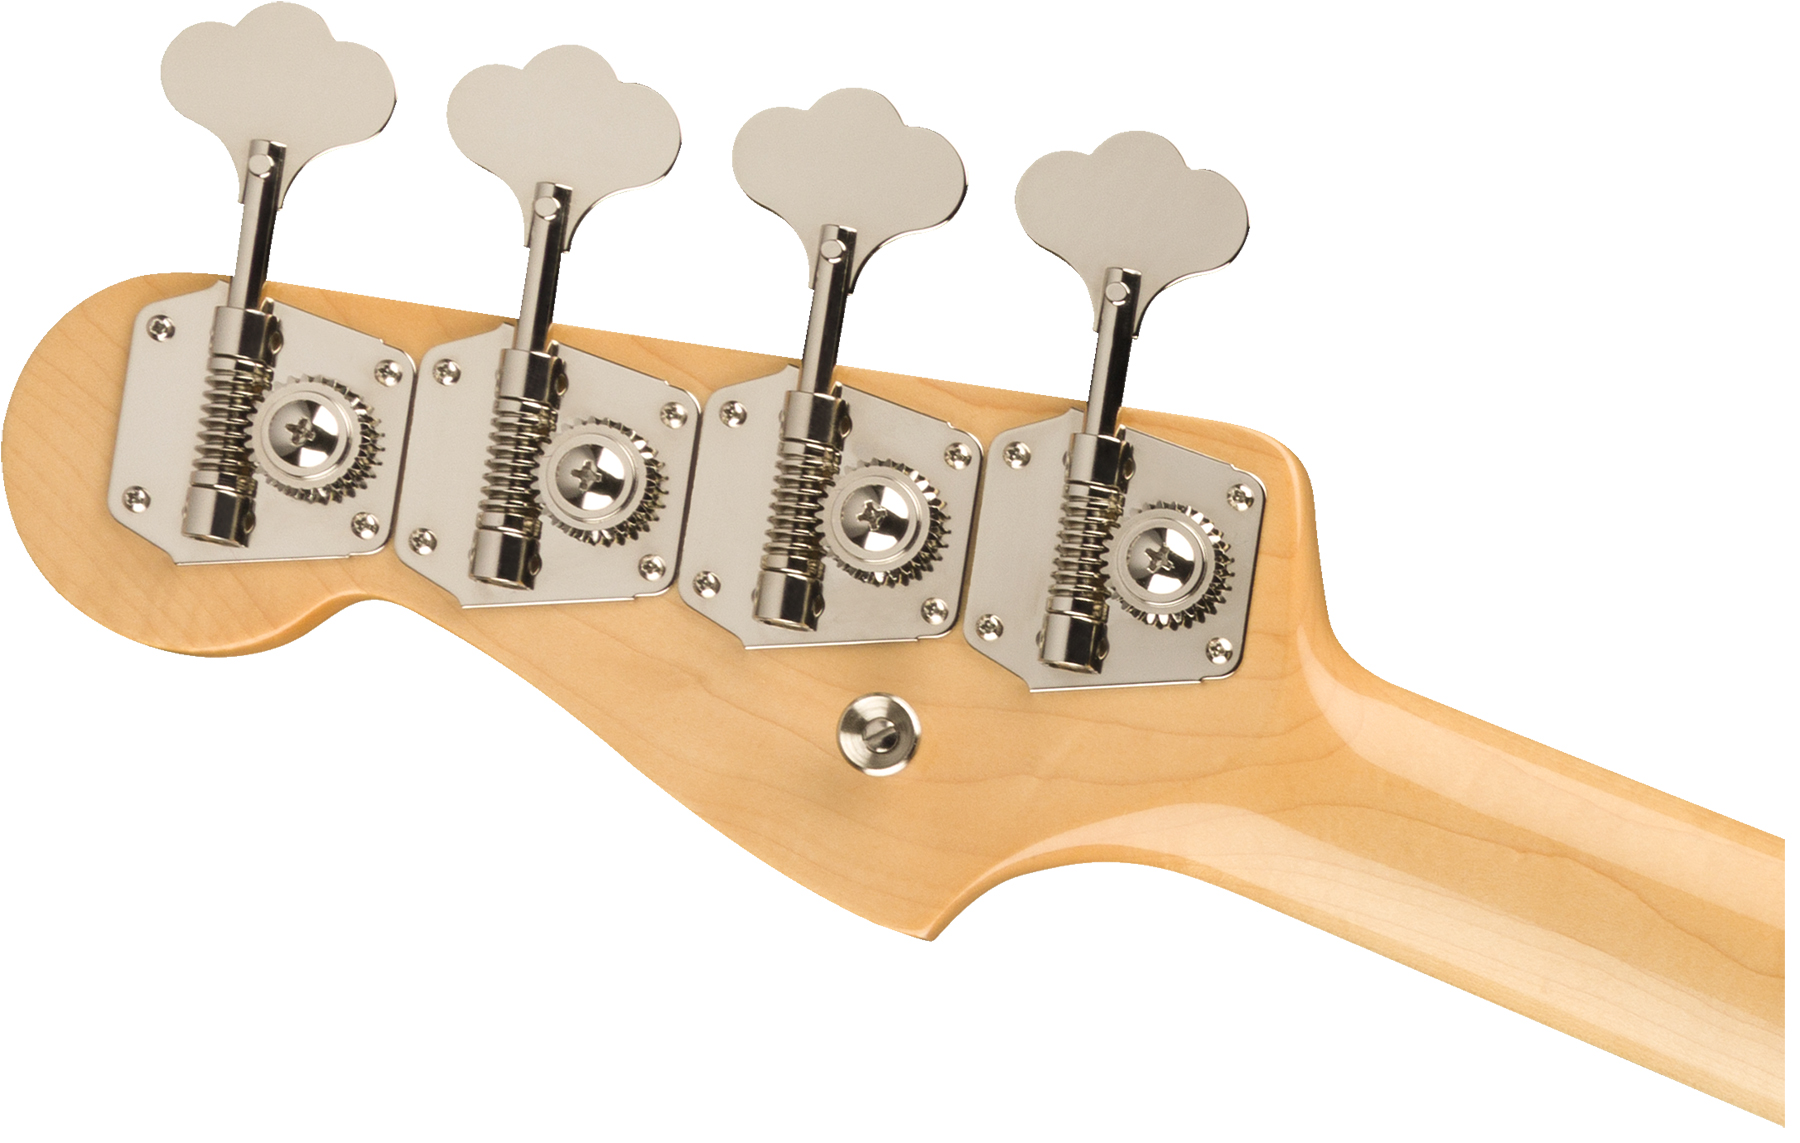 Fender Precision Bass '60s American Original Usa Rw - Surf Green - Solidbody E-bass - Variation 3